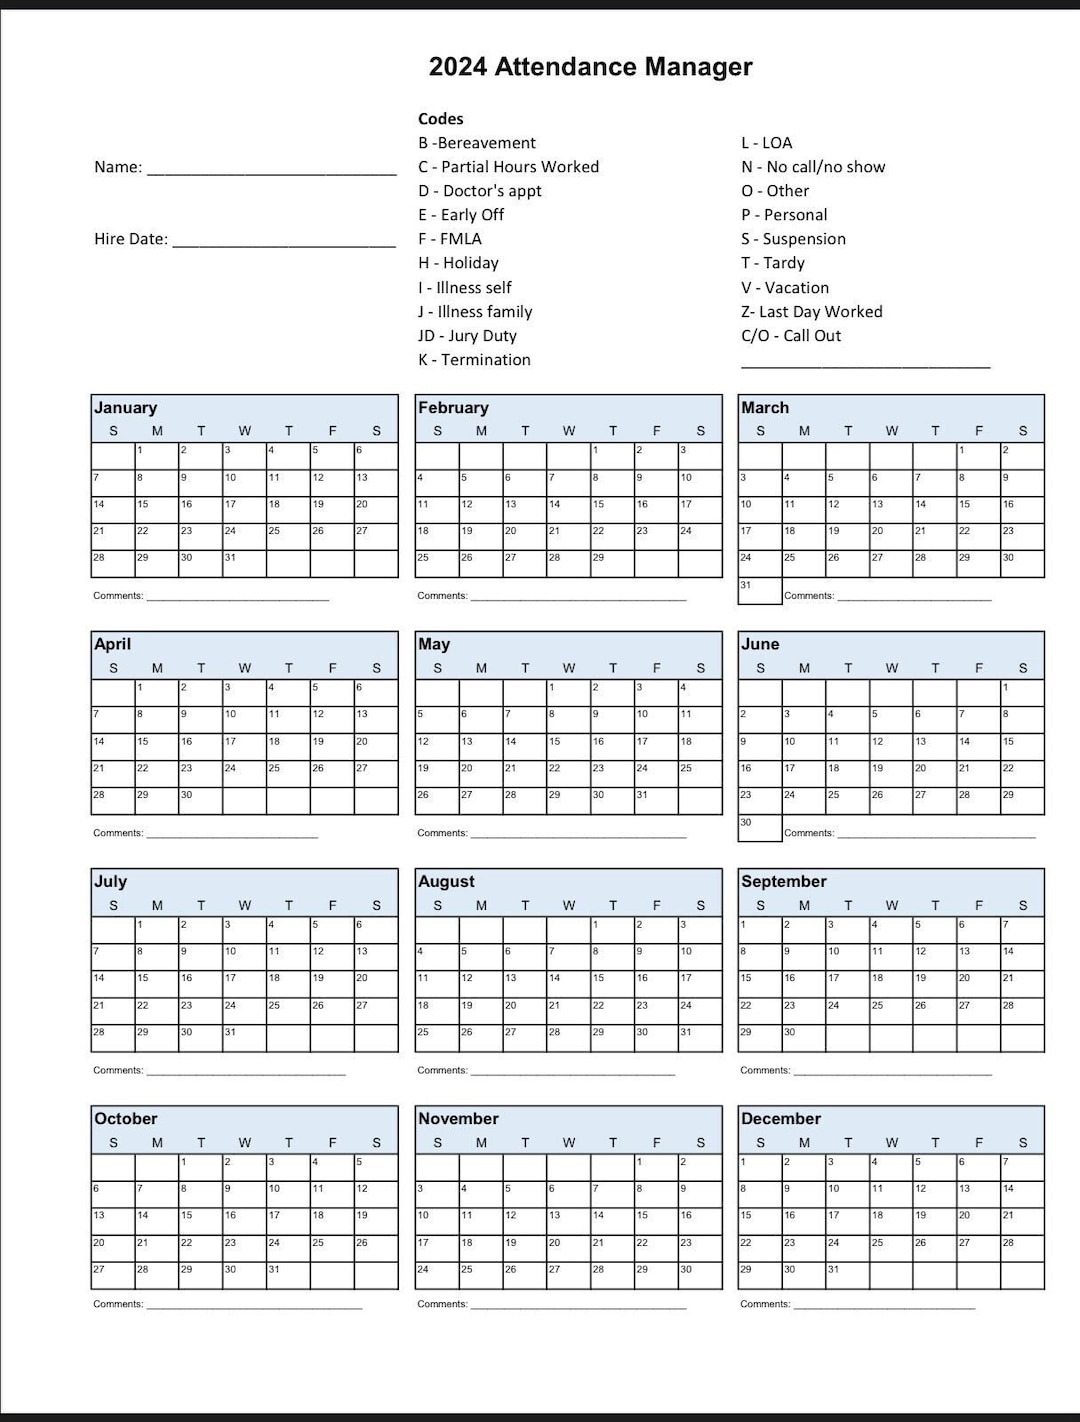 2024 Employee School Attendance Tracker Calendar, Employee intended for Attendance Calendar 2024